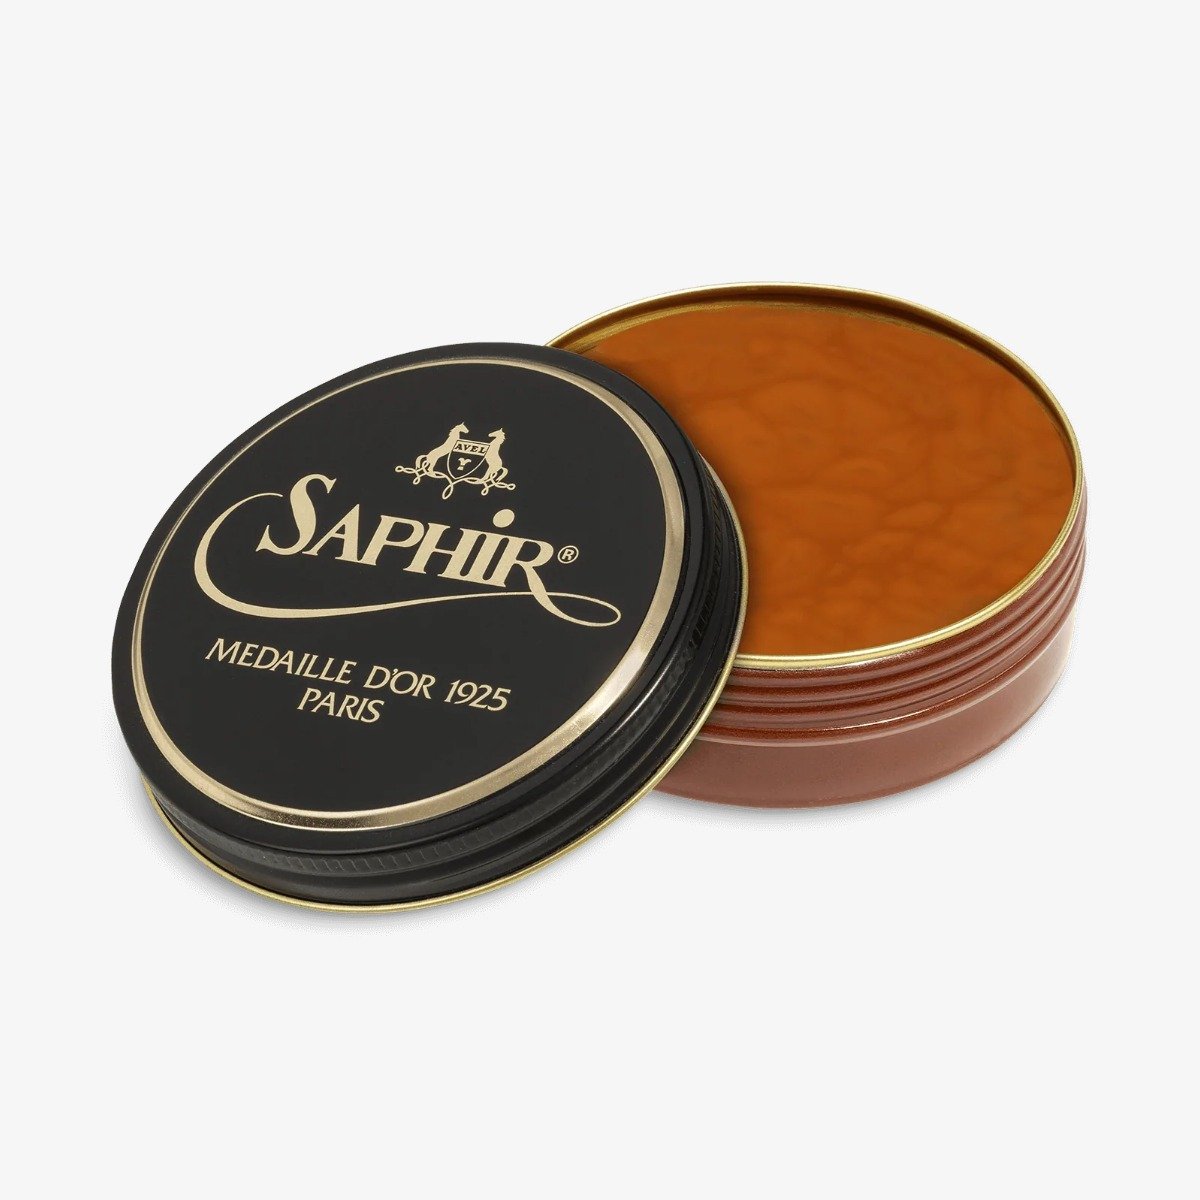 Saphir Pate de Luxe light brown wax polish